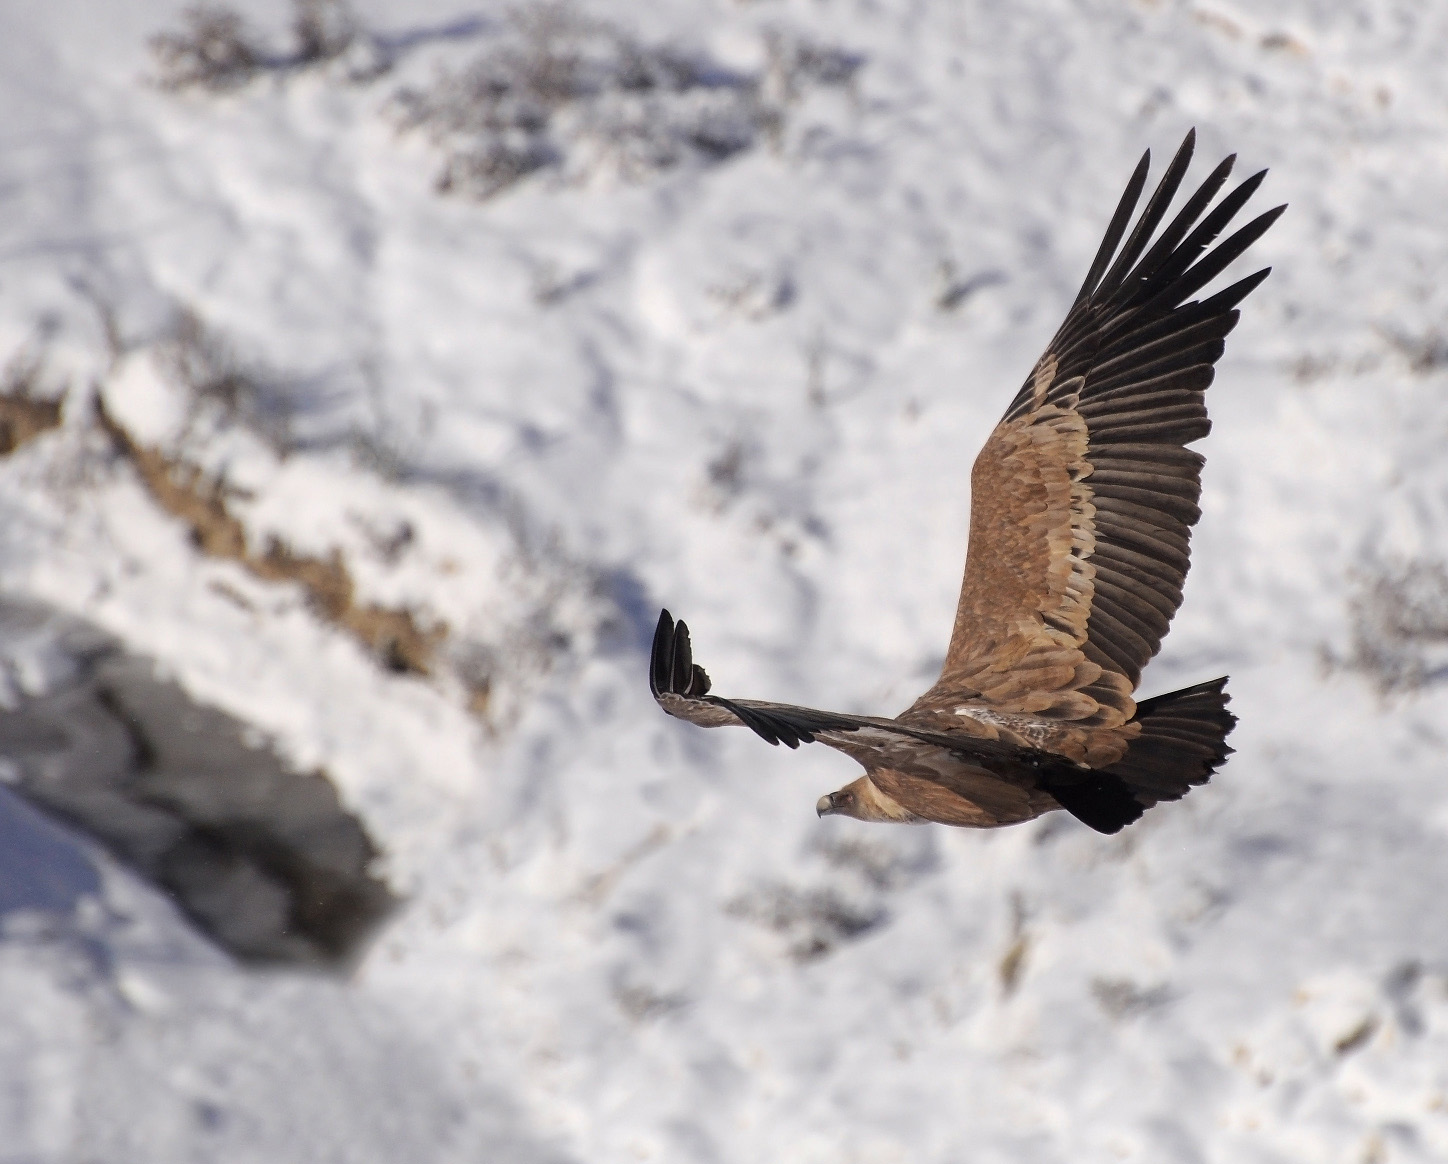 Griffon vulture sa paglupad sa background sa bato